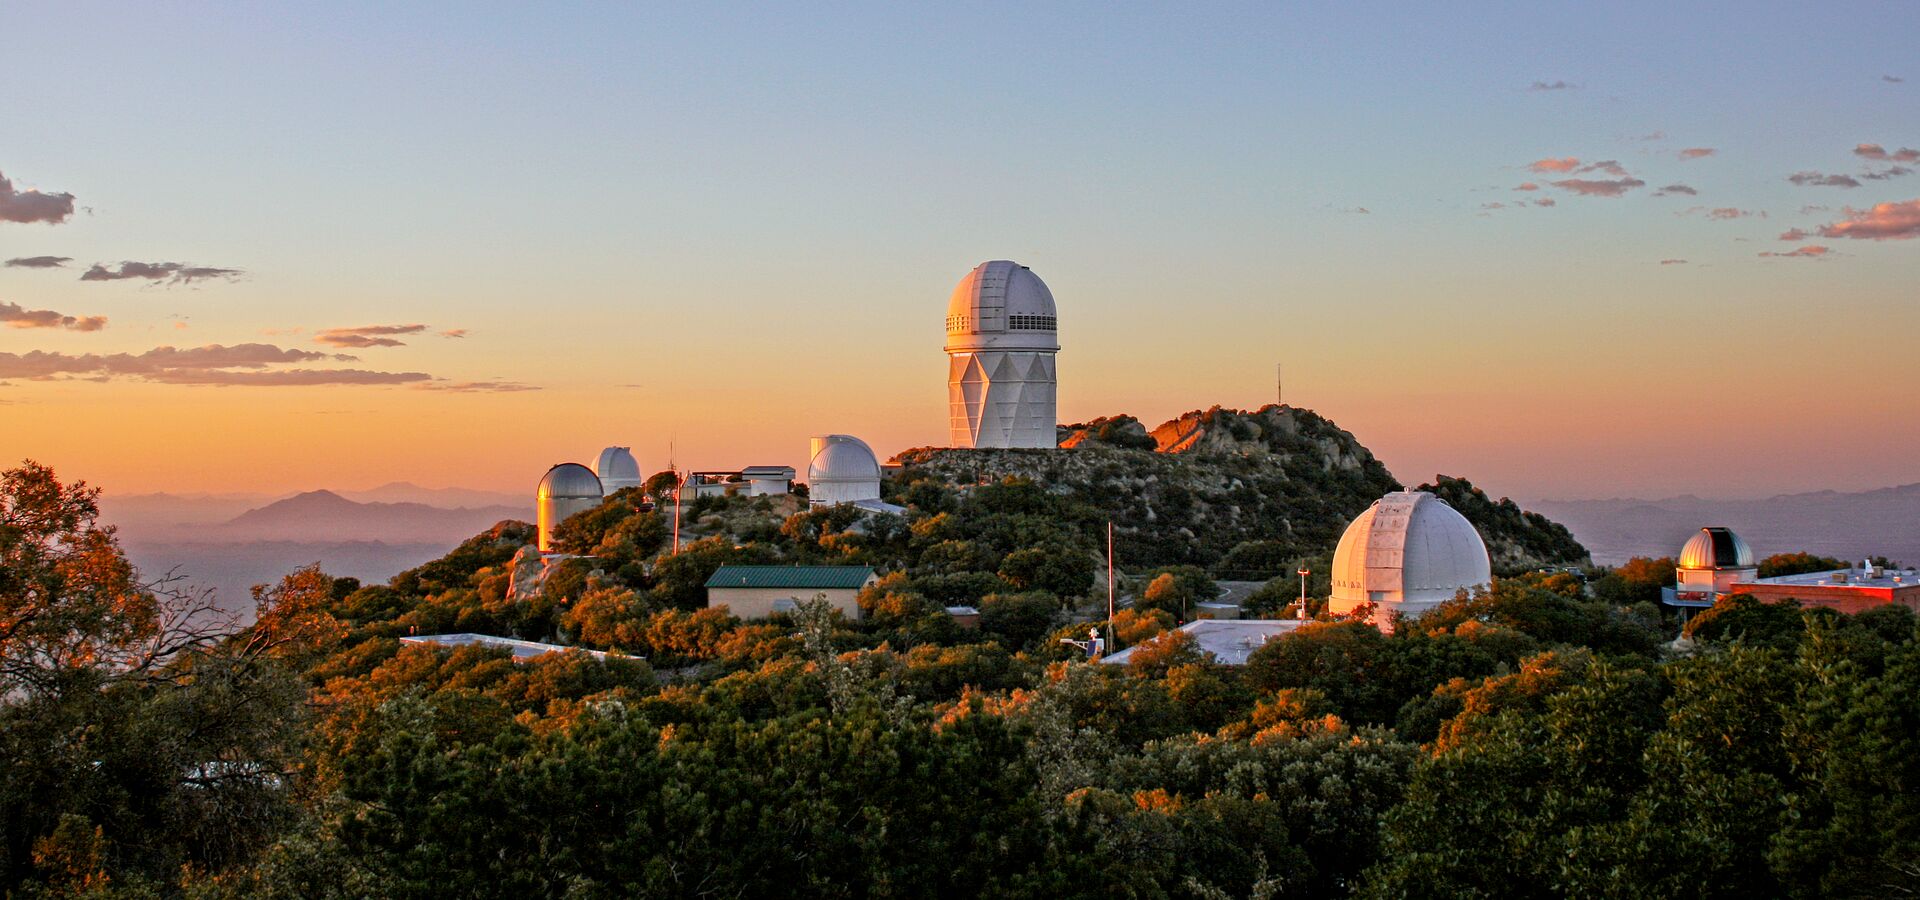 Parte del Observatorio Nacional Kitt Peak. El Telescopio de 4 metros Nicholas U. Mayall se alza prominente en la cresta más alta. Este telescopio alberga el Instrumento Espectroscópico para el estudio de la Energía Oscura (DESI por sus siglas en inglés) que mide el efecto de la energía oscura en la expansión del Universo.